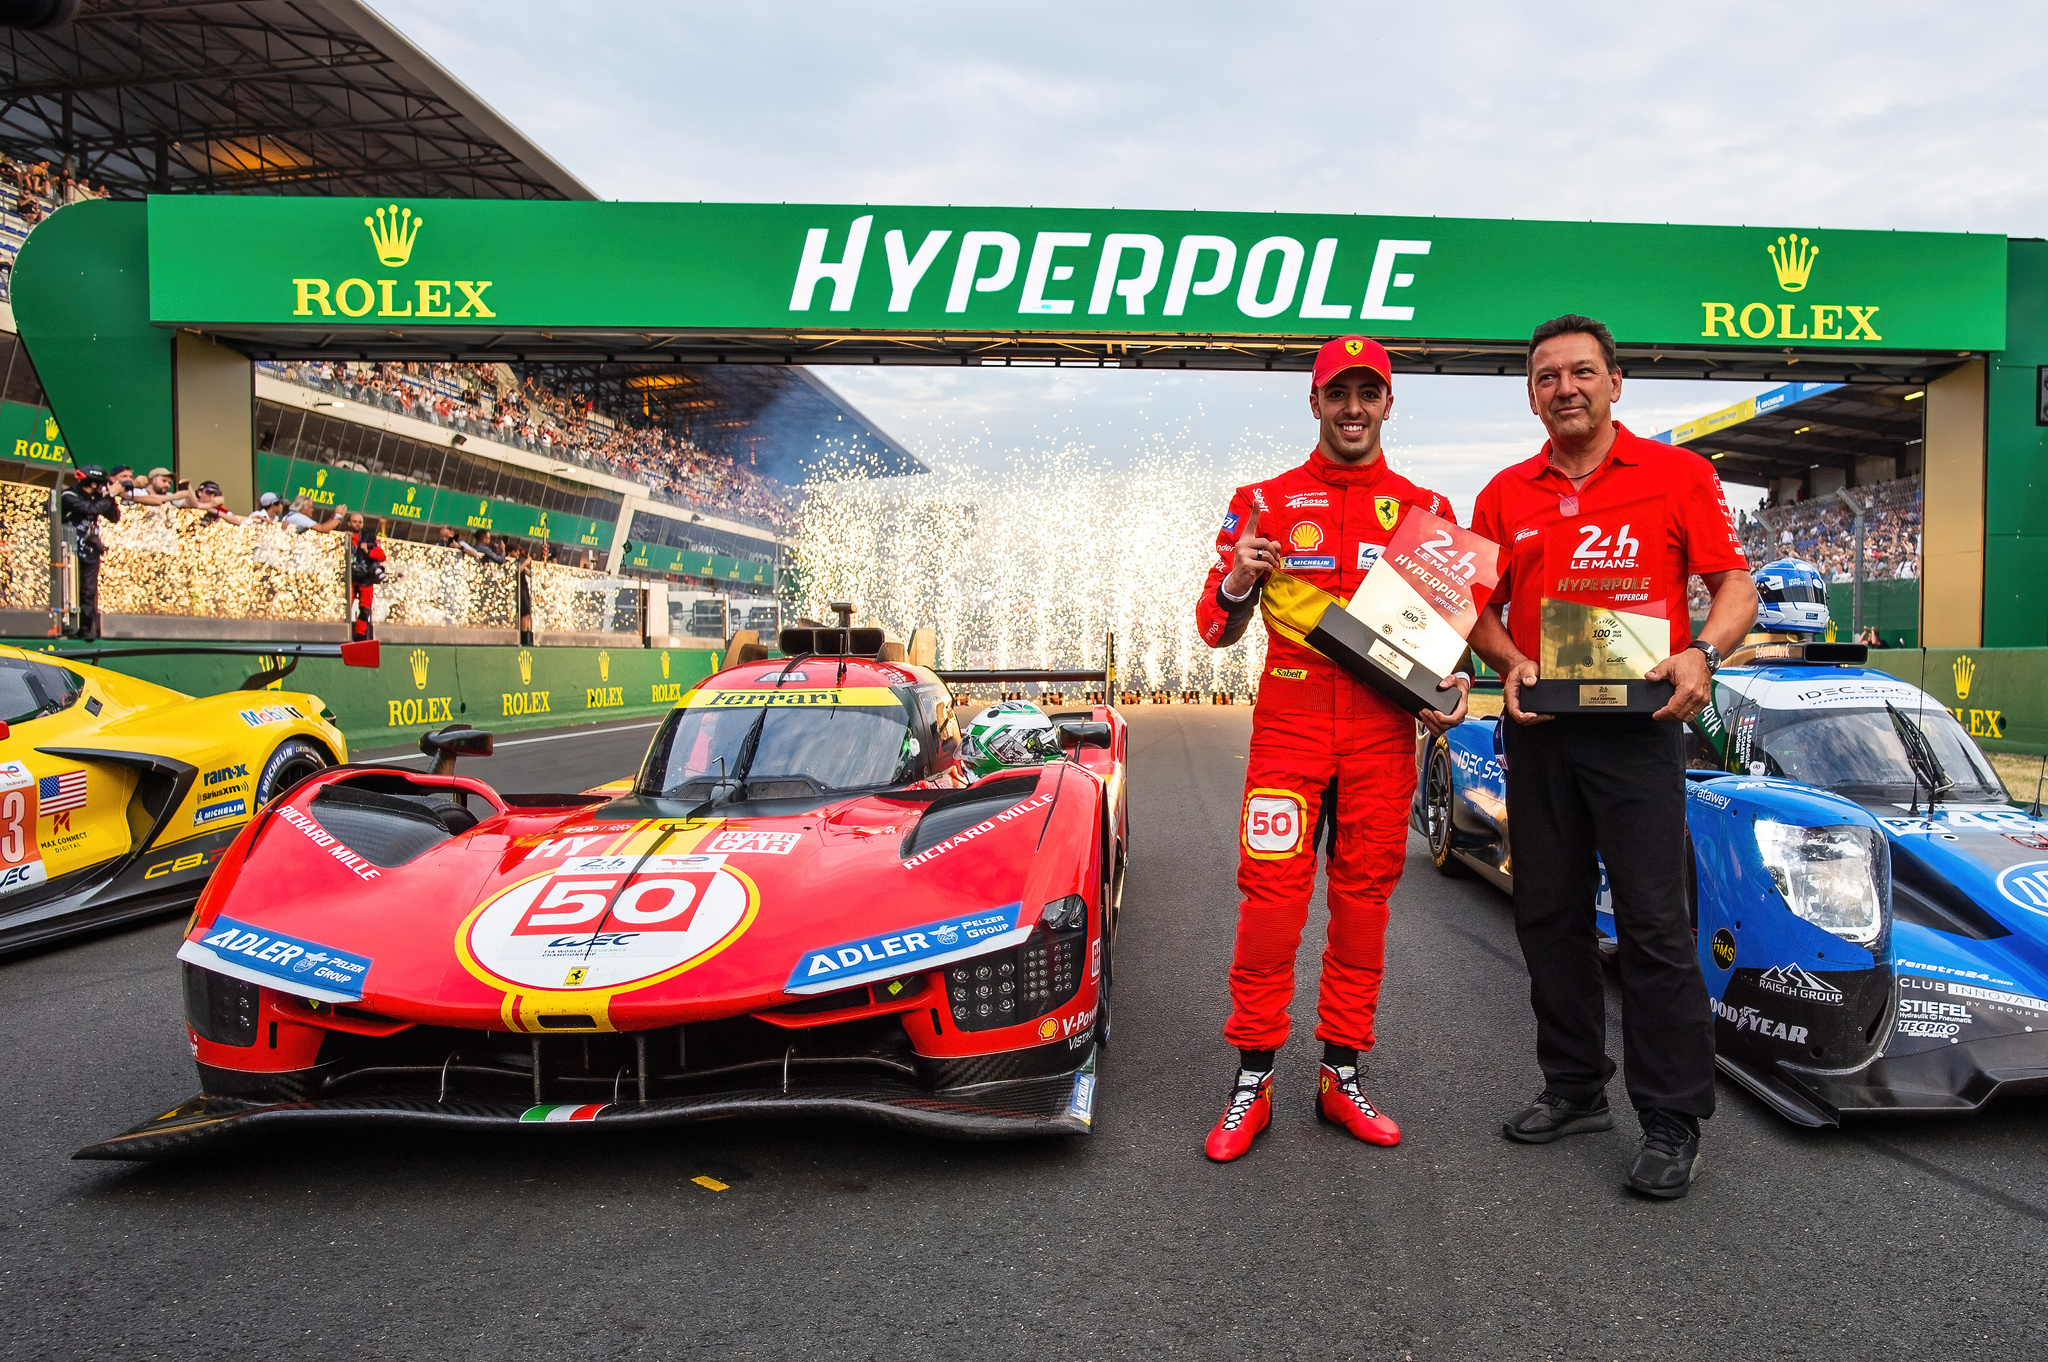 Ferrari rompe la hegemonía de Toyota: Miguel Molina saldrá en la pole en Le Mans